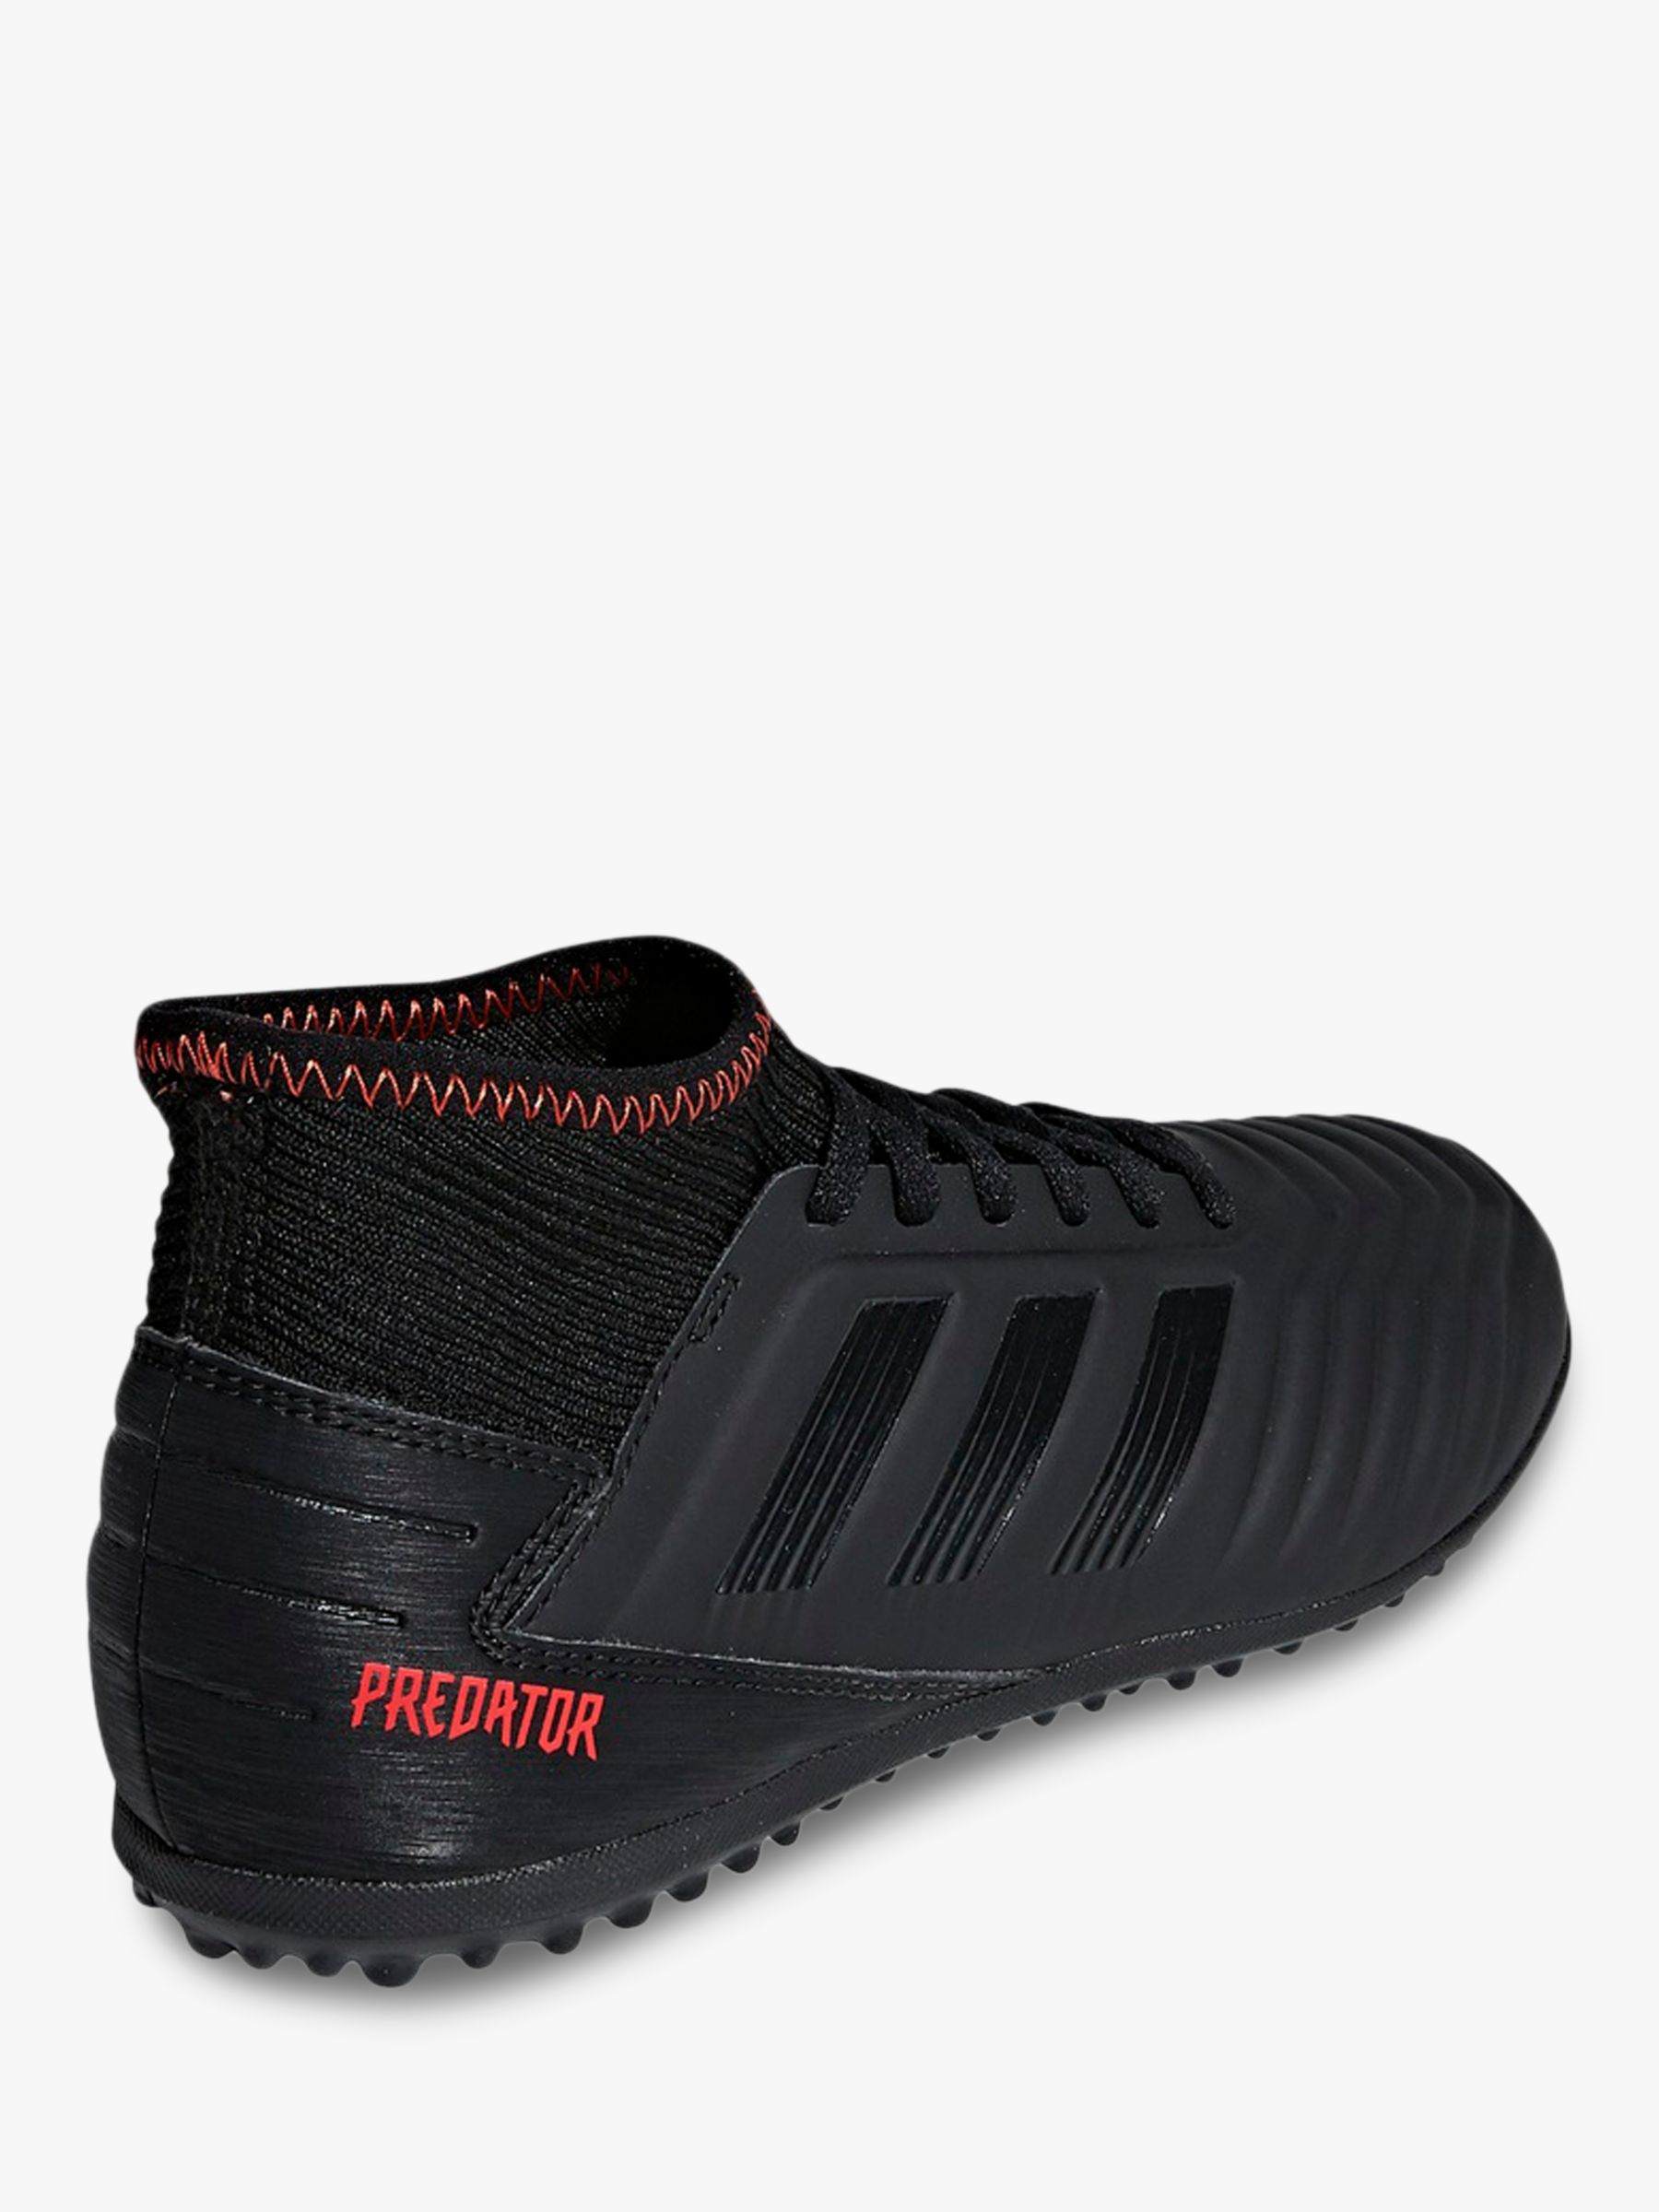 adidas predator 19.3 turf shoes